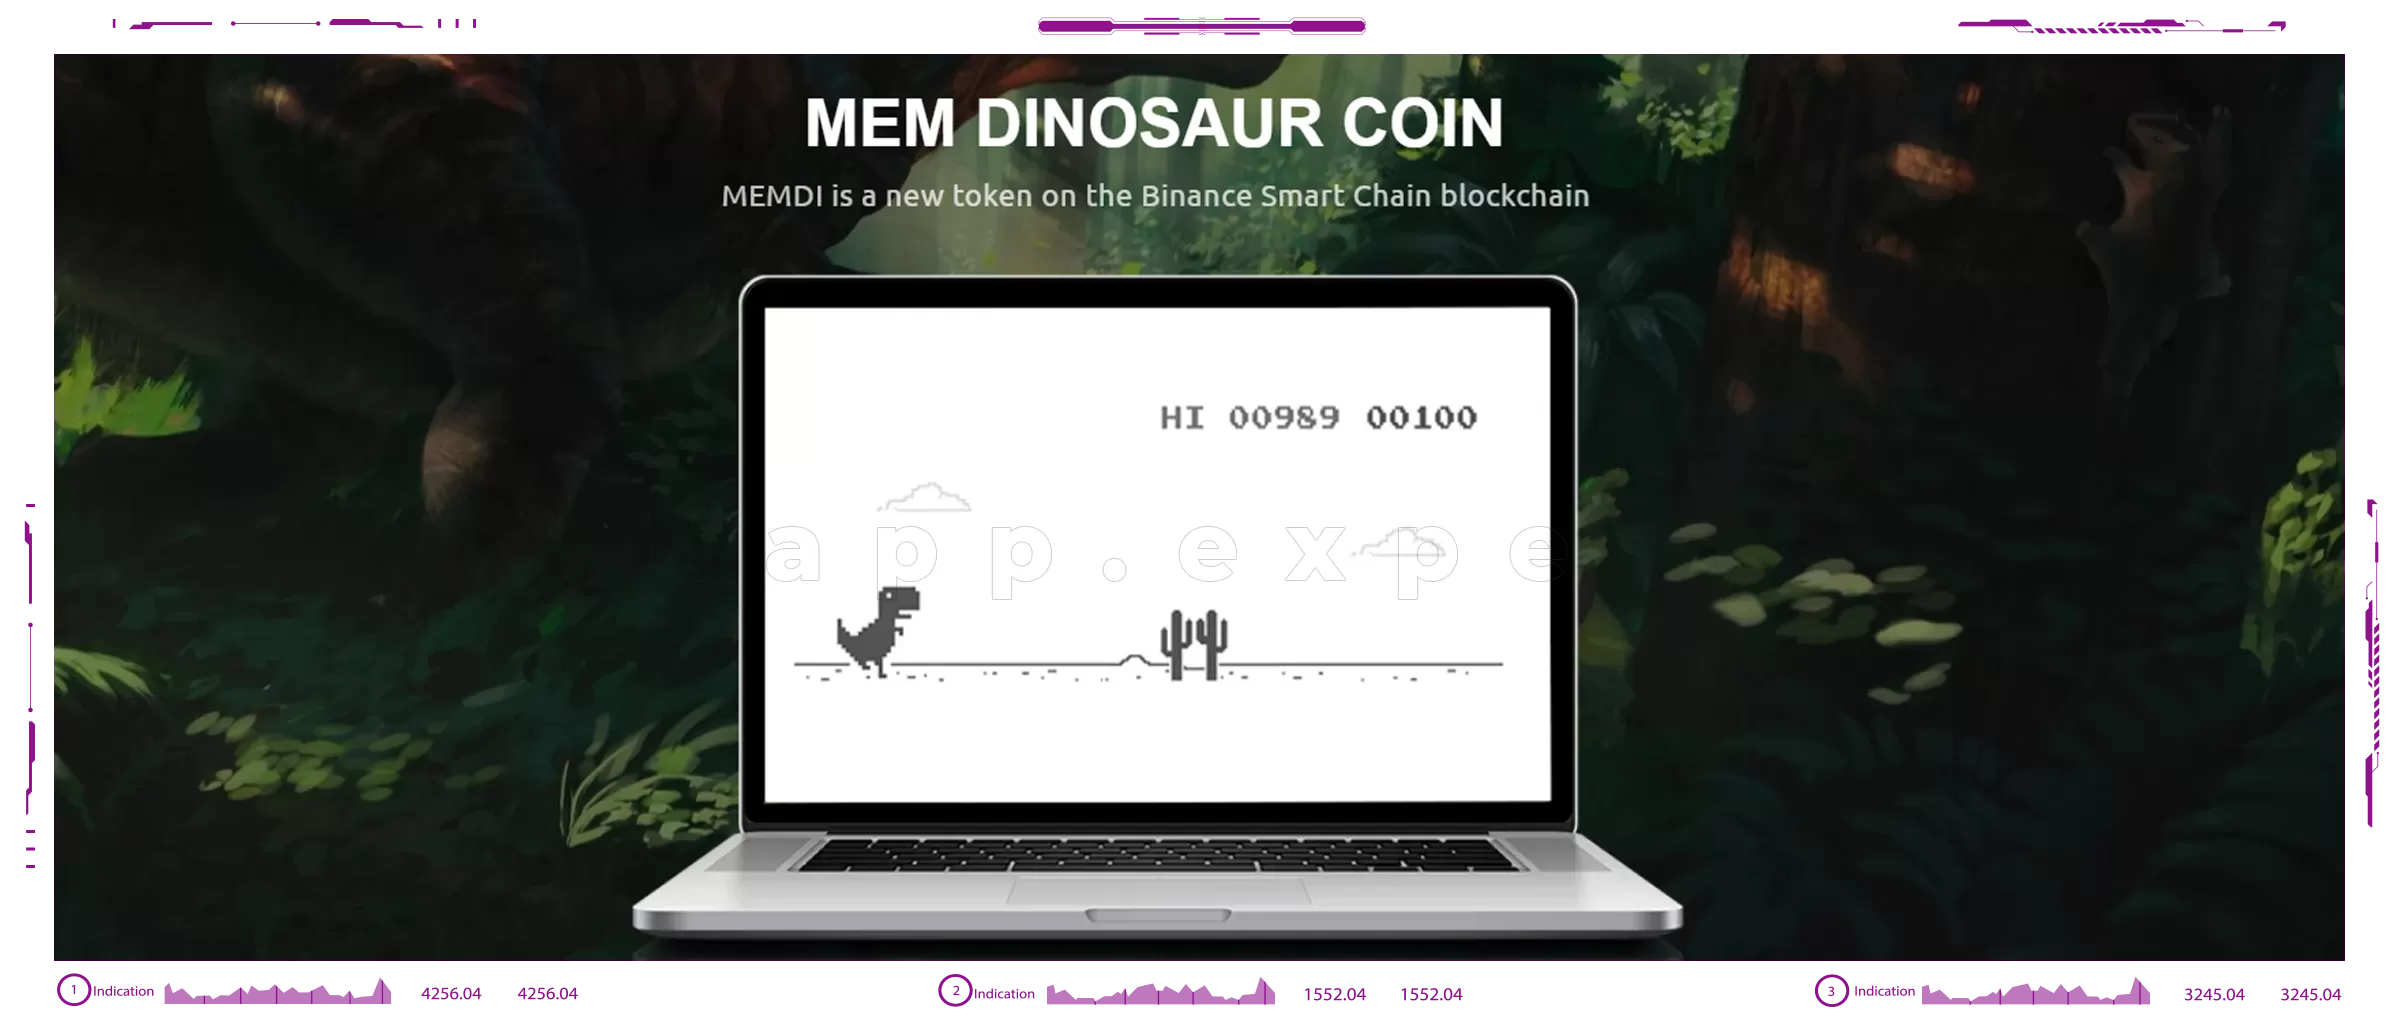 Mem Dinosaur Coin dapps